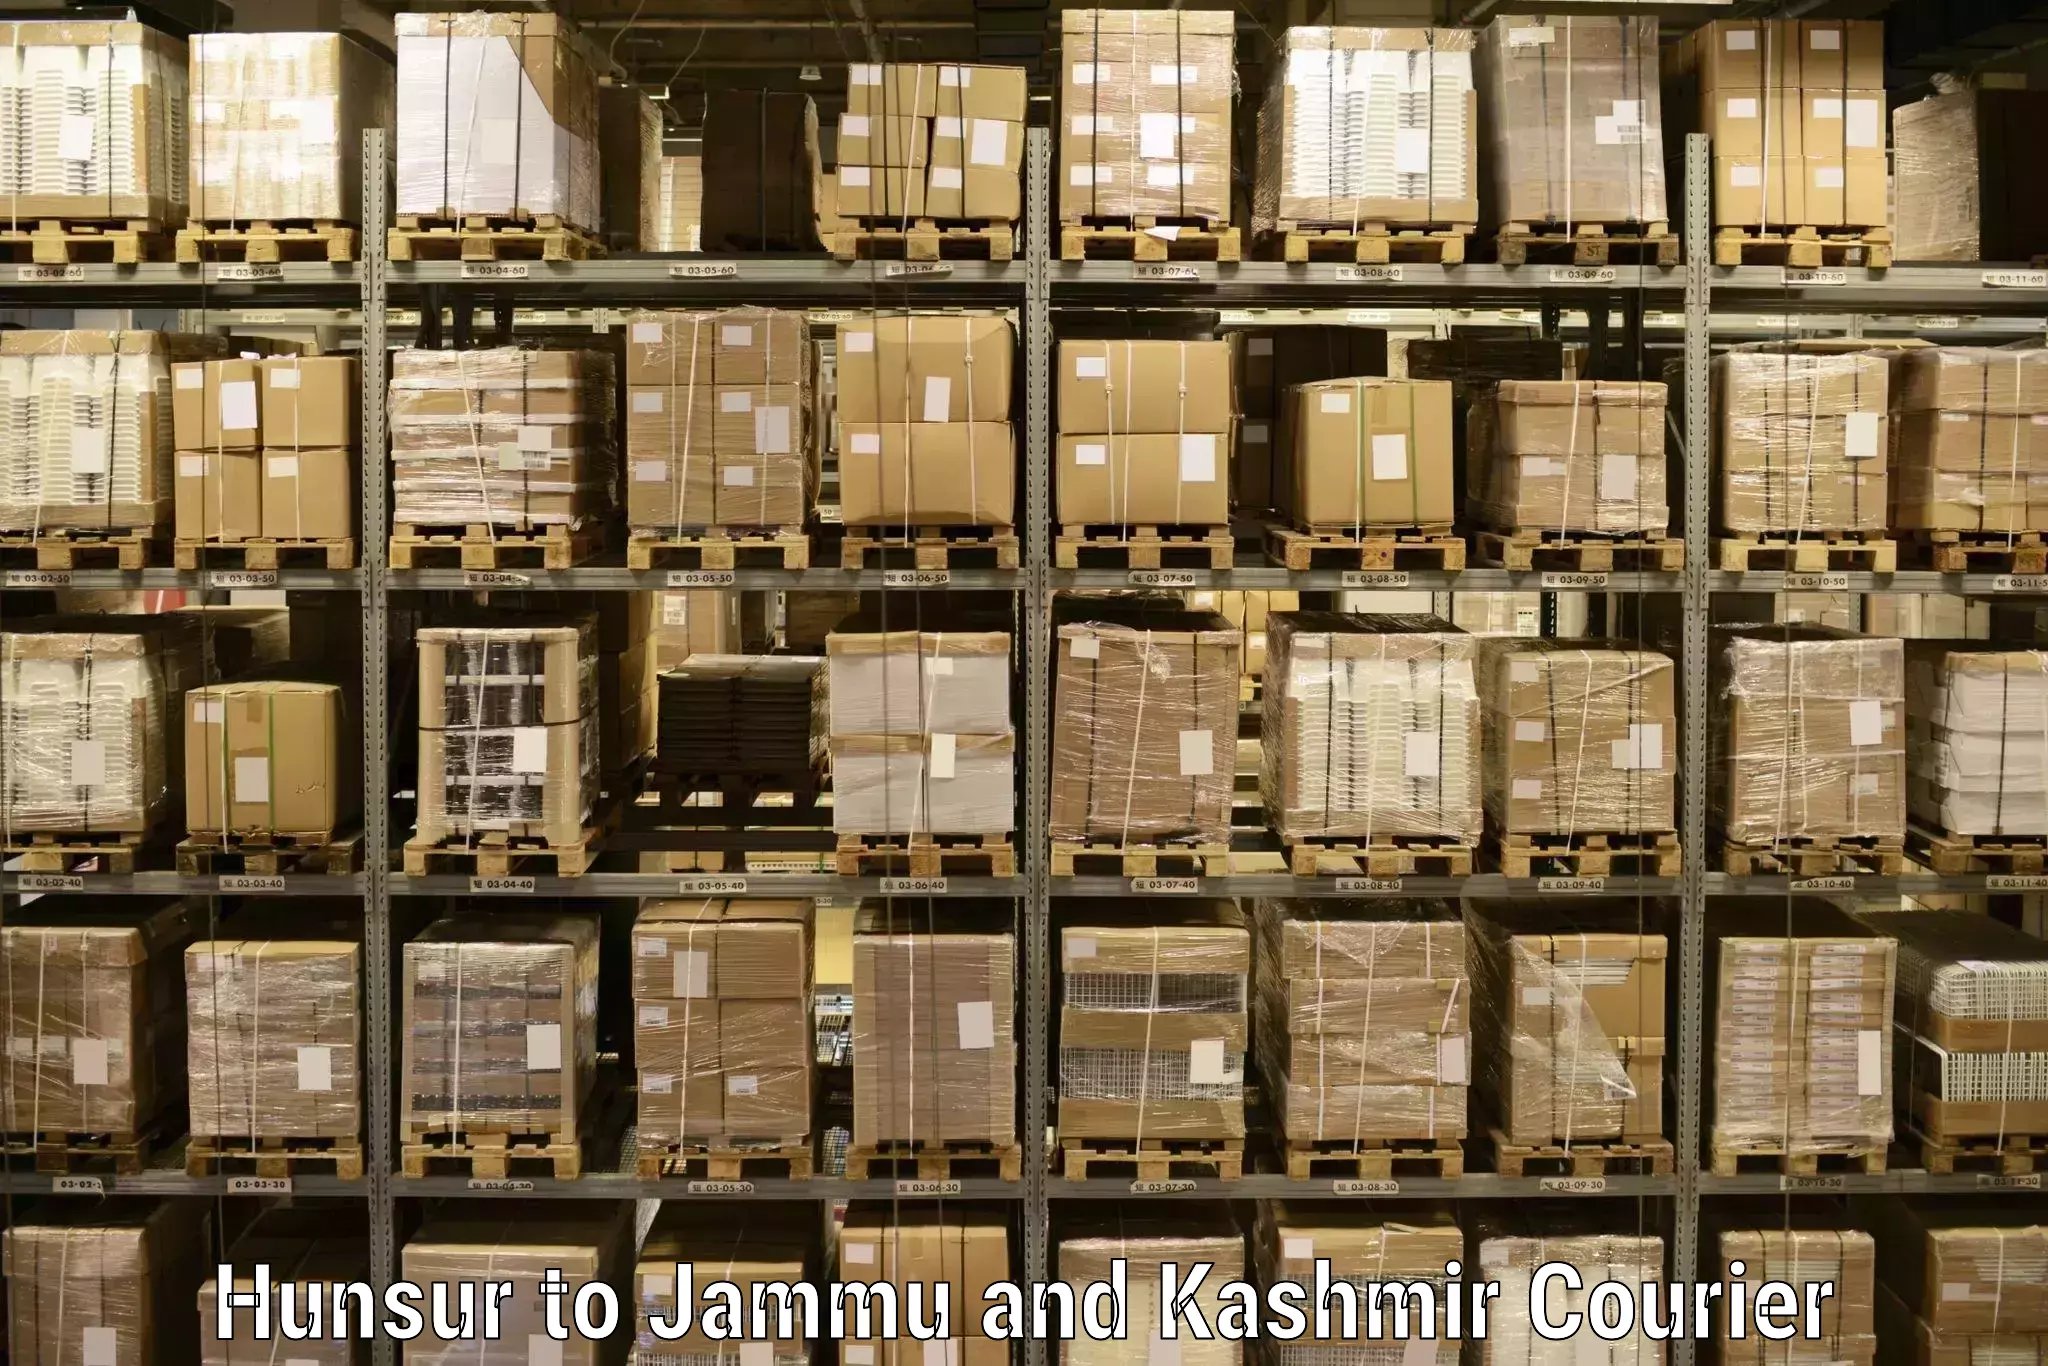 Efficient parcel service Hunsur to Kargil